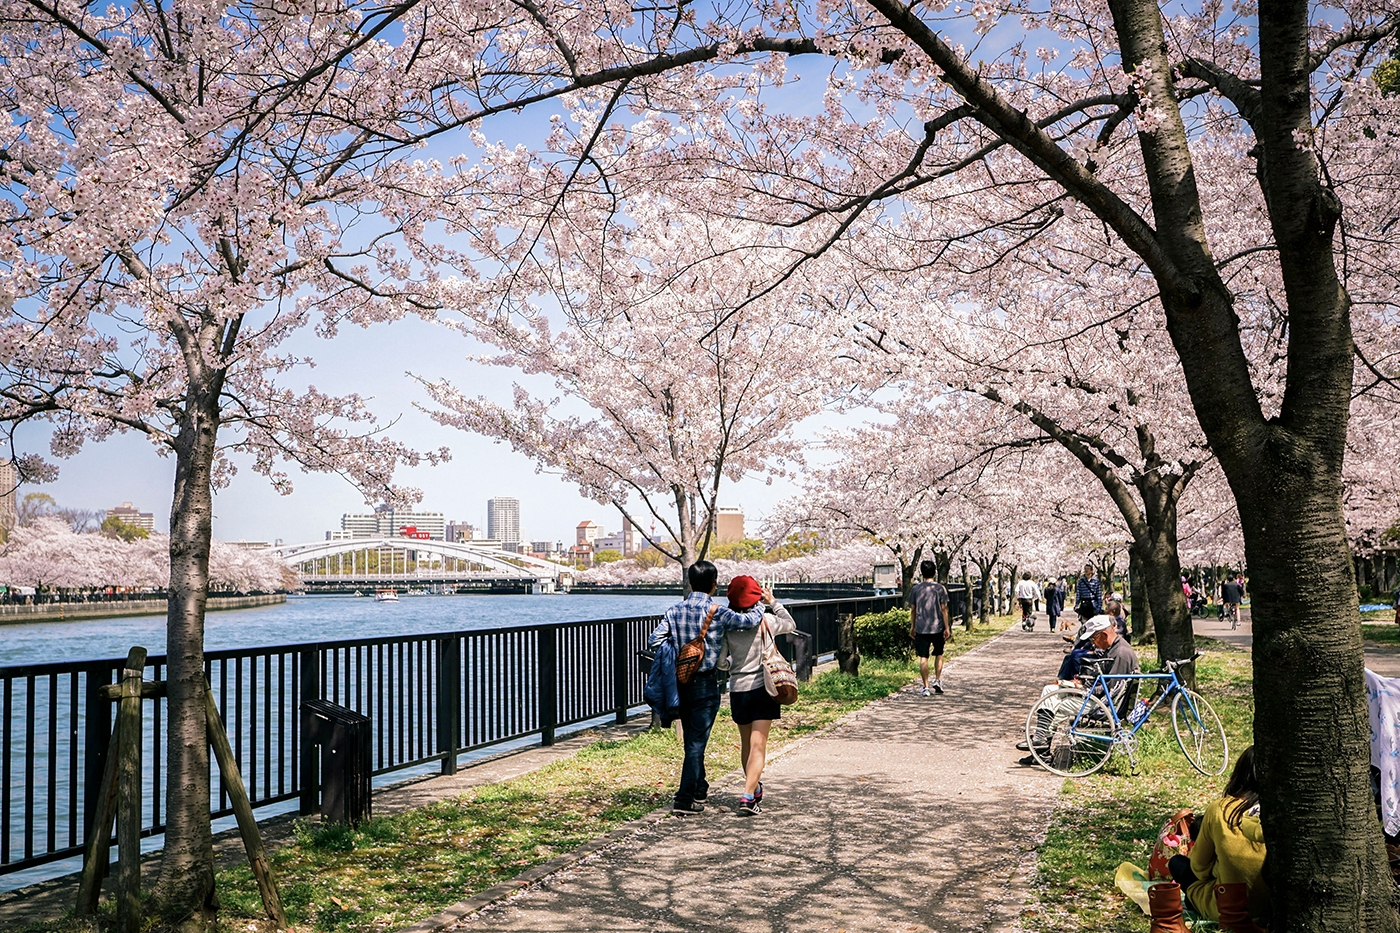 風光明媚な毛馬桜之宮公園沿いに桜が咲くと、川岸はピンク色のキャンバスになります